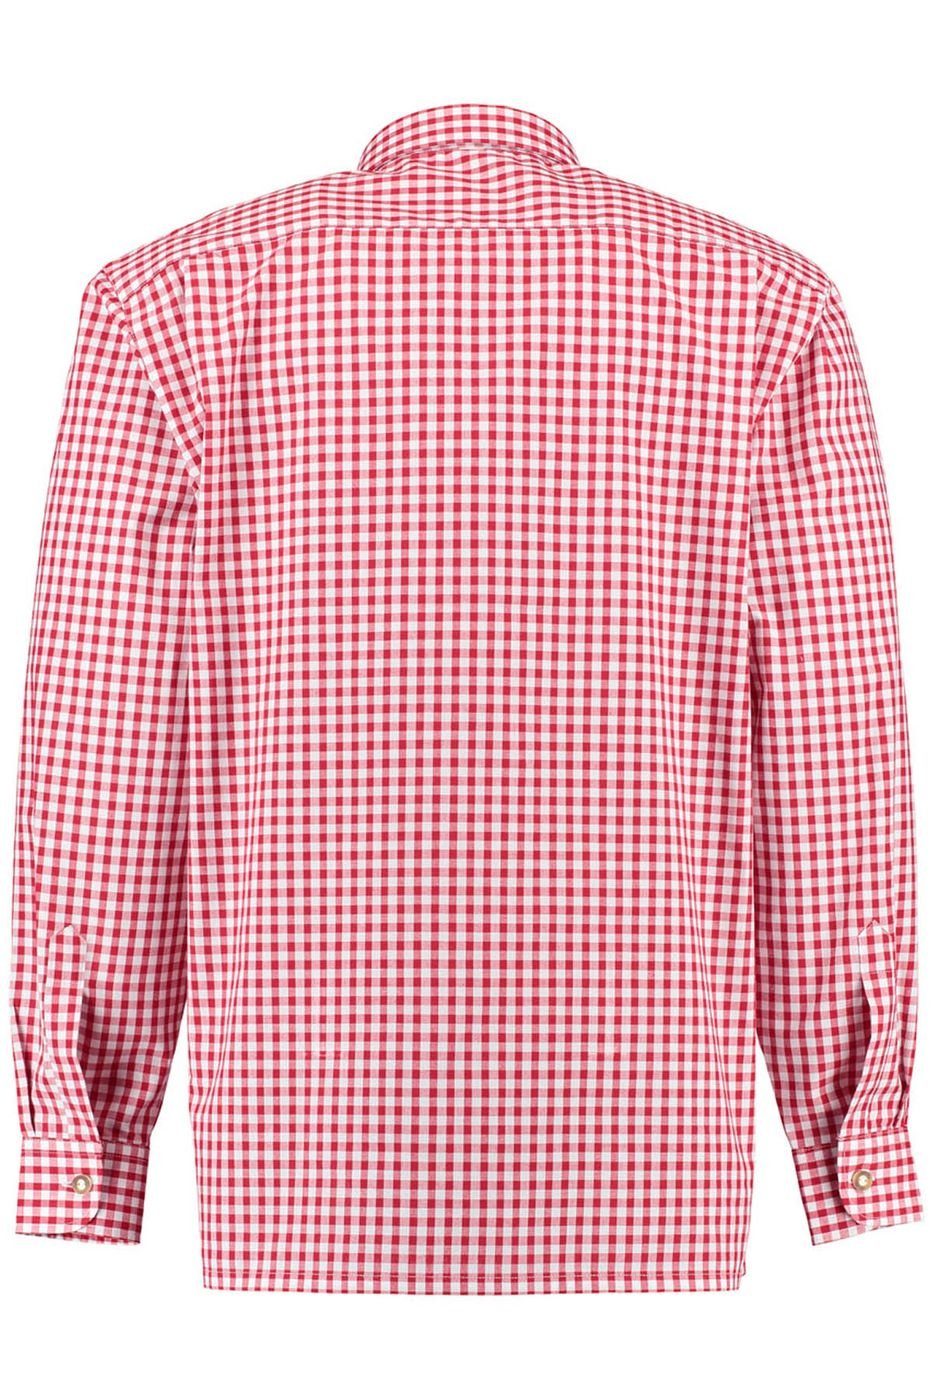 mit Hirsch O54 für Trachtenhemd Rot German Lederhosen Stickerei Wear Trachtenhemd Langarm